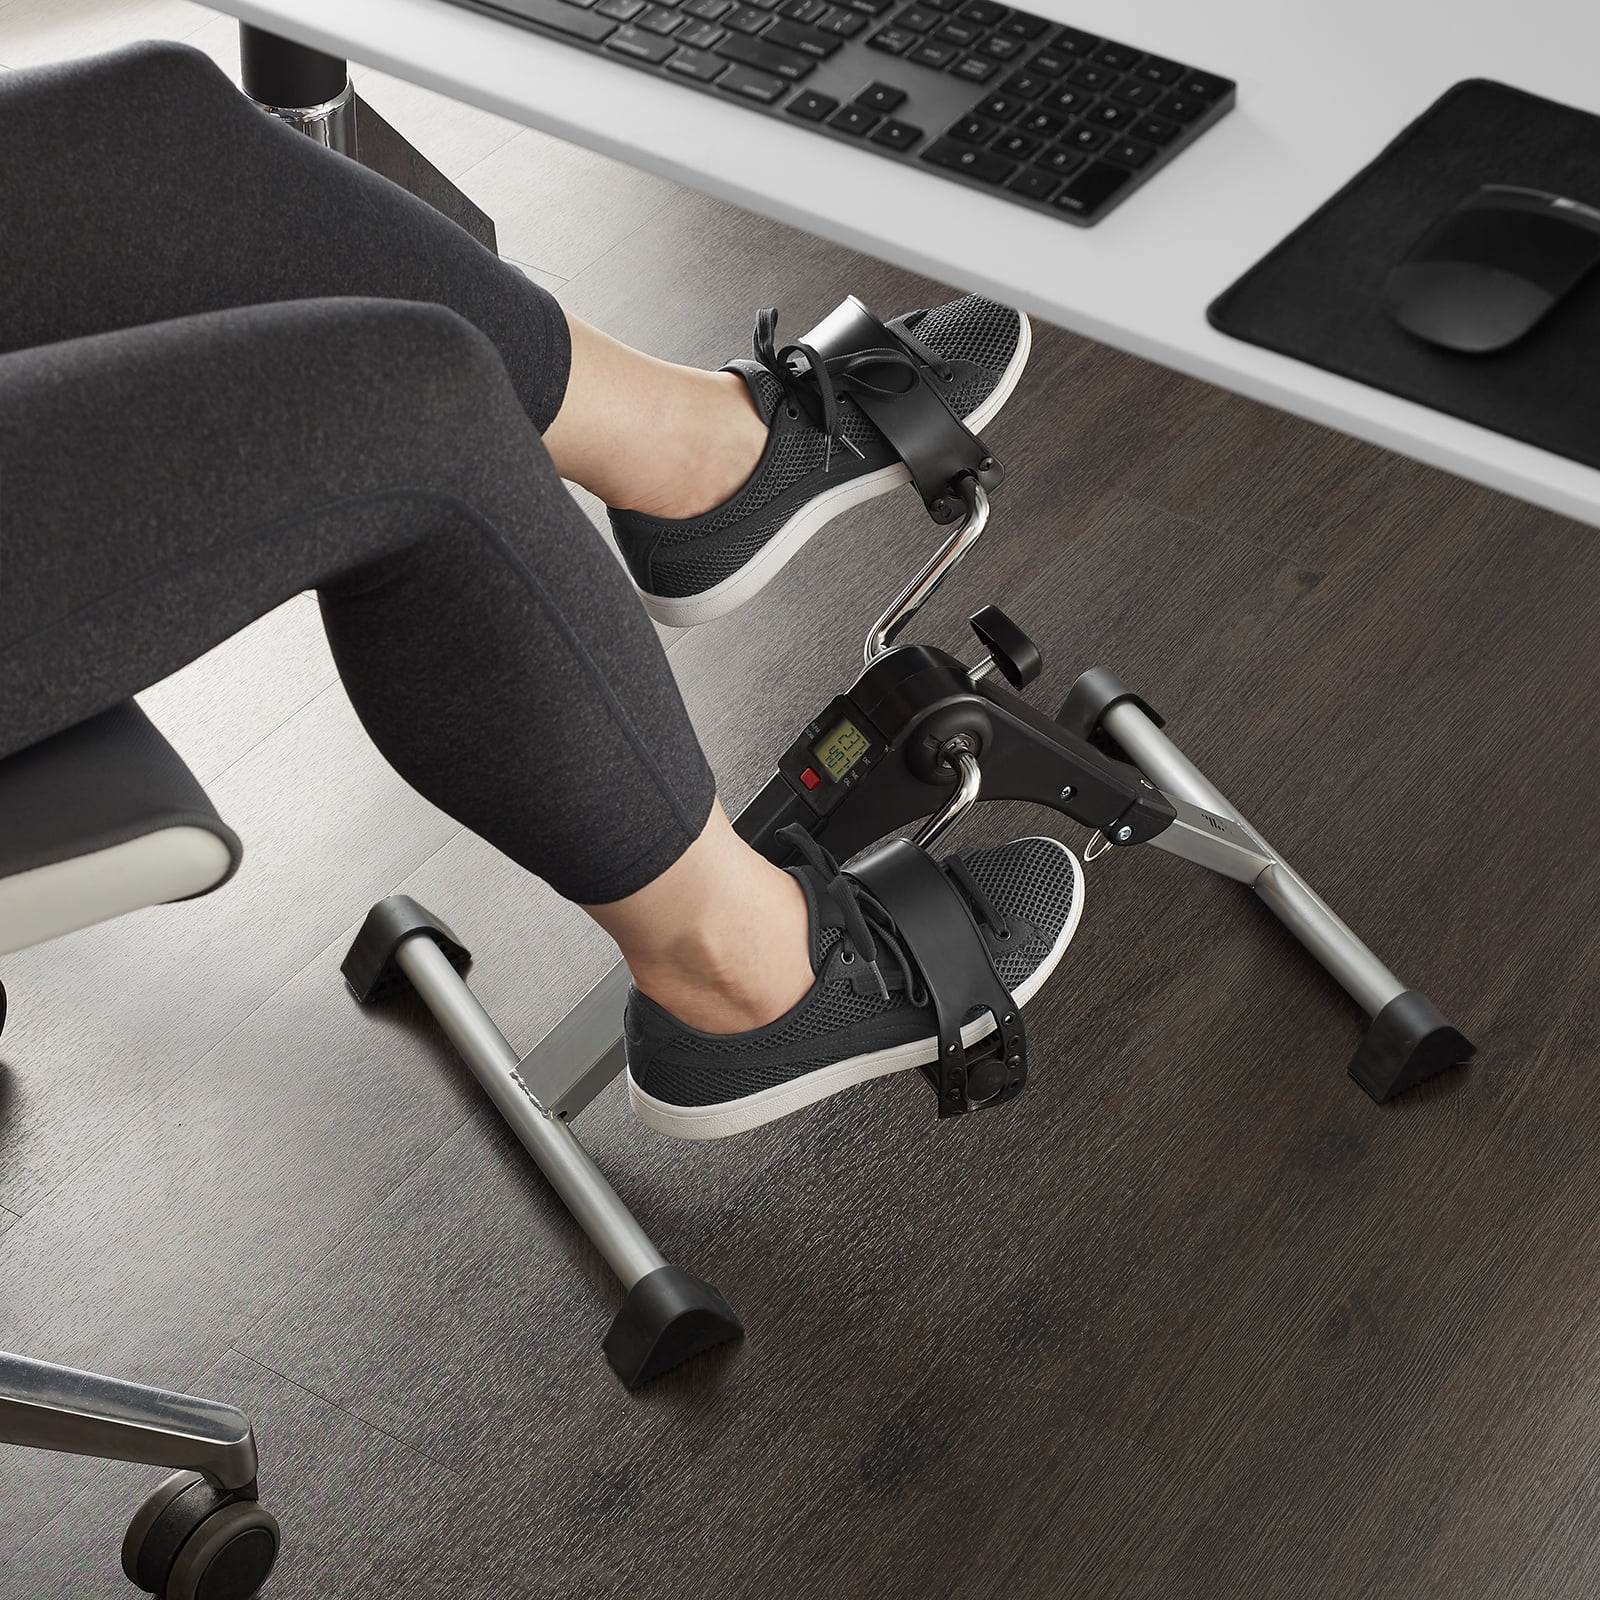 Arm Leg Foot Pedal Exerciser NEW Foldable Under Desk Stationary Exercise Bike 